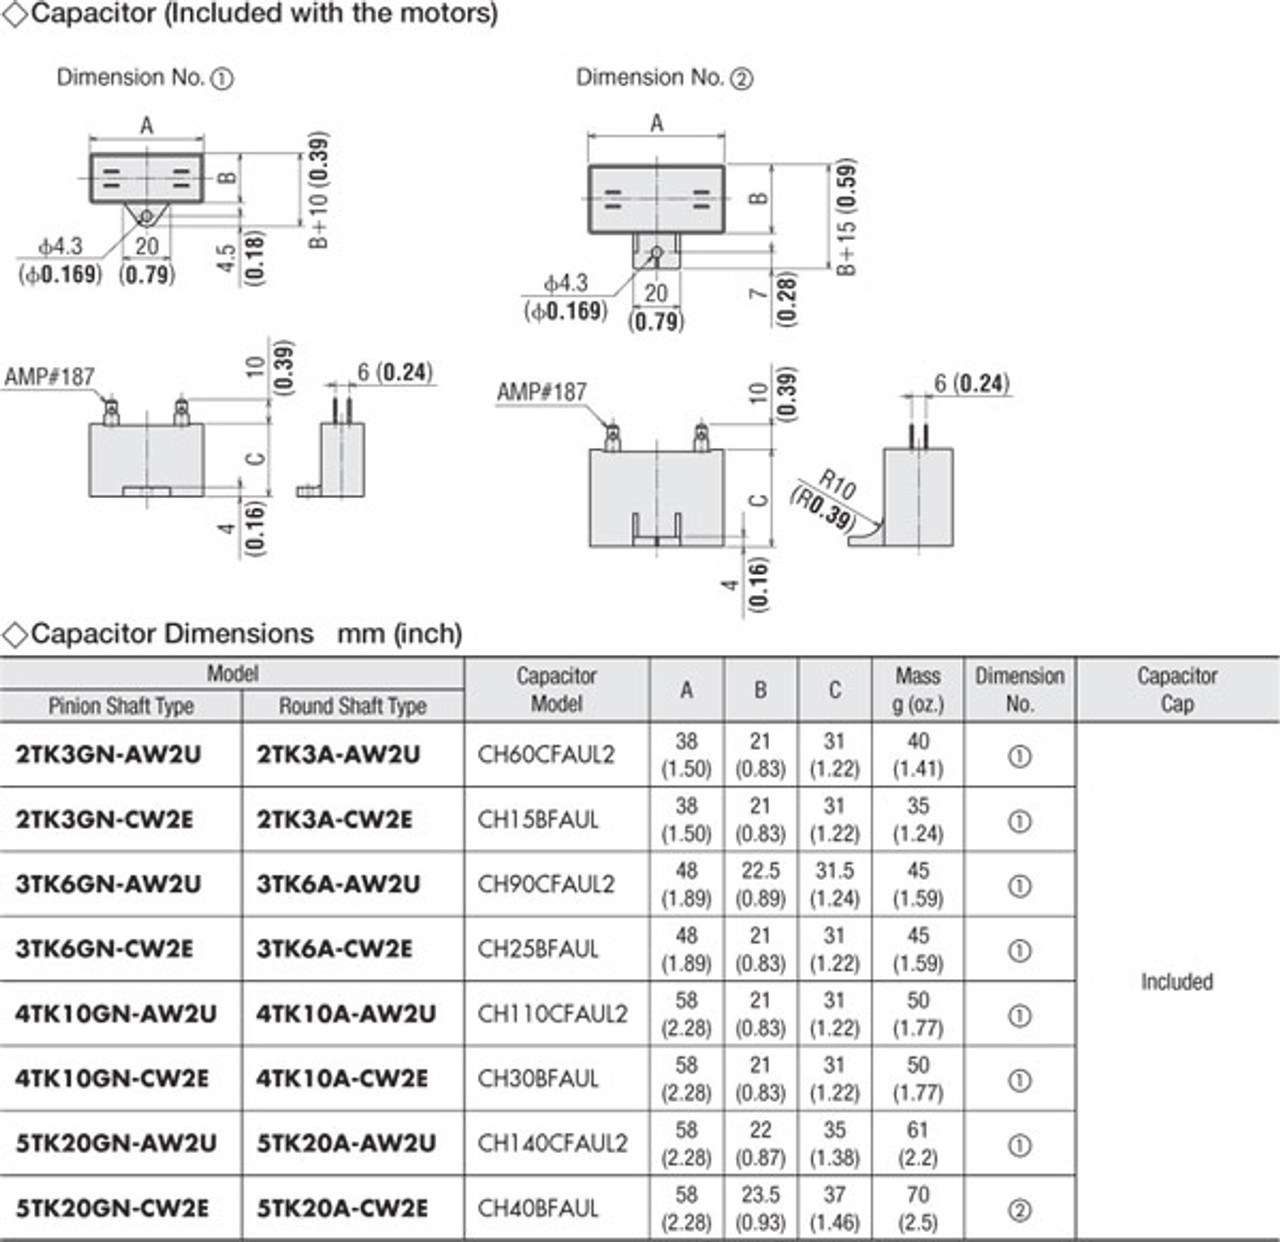 5TK20GN-CW2E / 5GN50SA - Capacitor